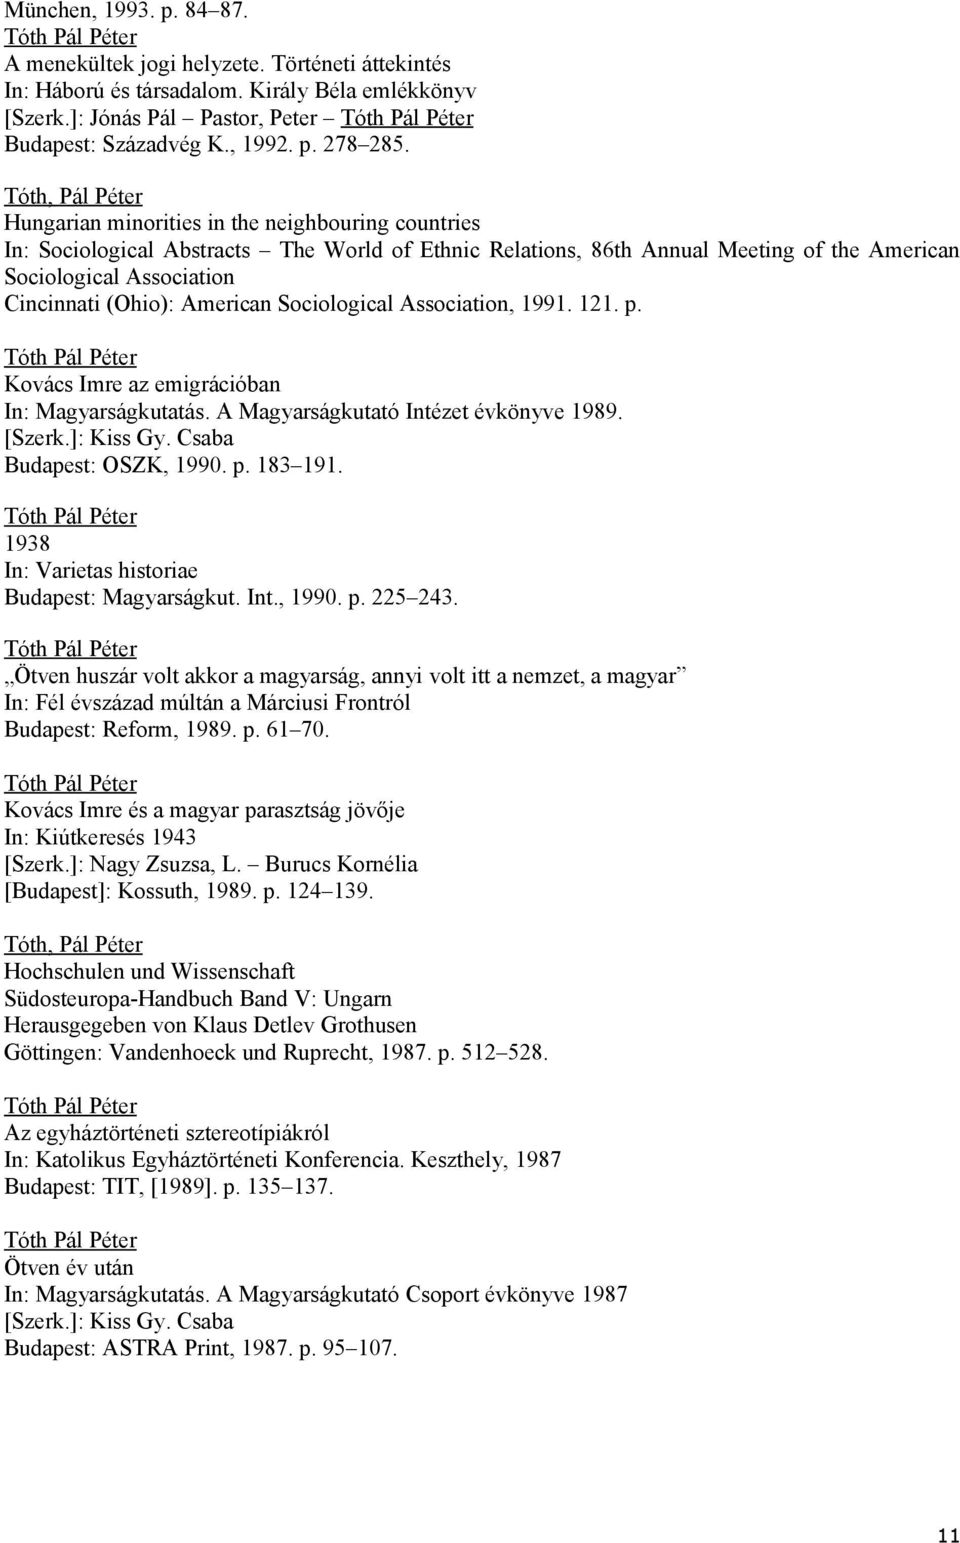 (Ohio): American Sociological Association, 1991. 121. p. Kovács Imre az emigrációban In: Magyarságkutatás. A Magyarságkutató Intézet évkönyve 1989. [Szerk.]: Kiss Gy. Csaba Budapest: OSZK, 1990. p. 183 191.